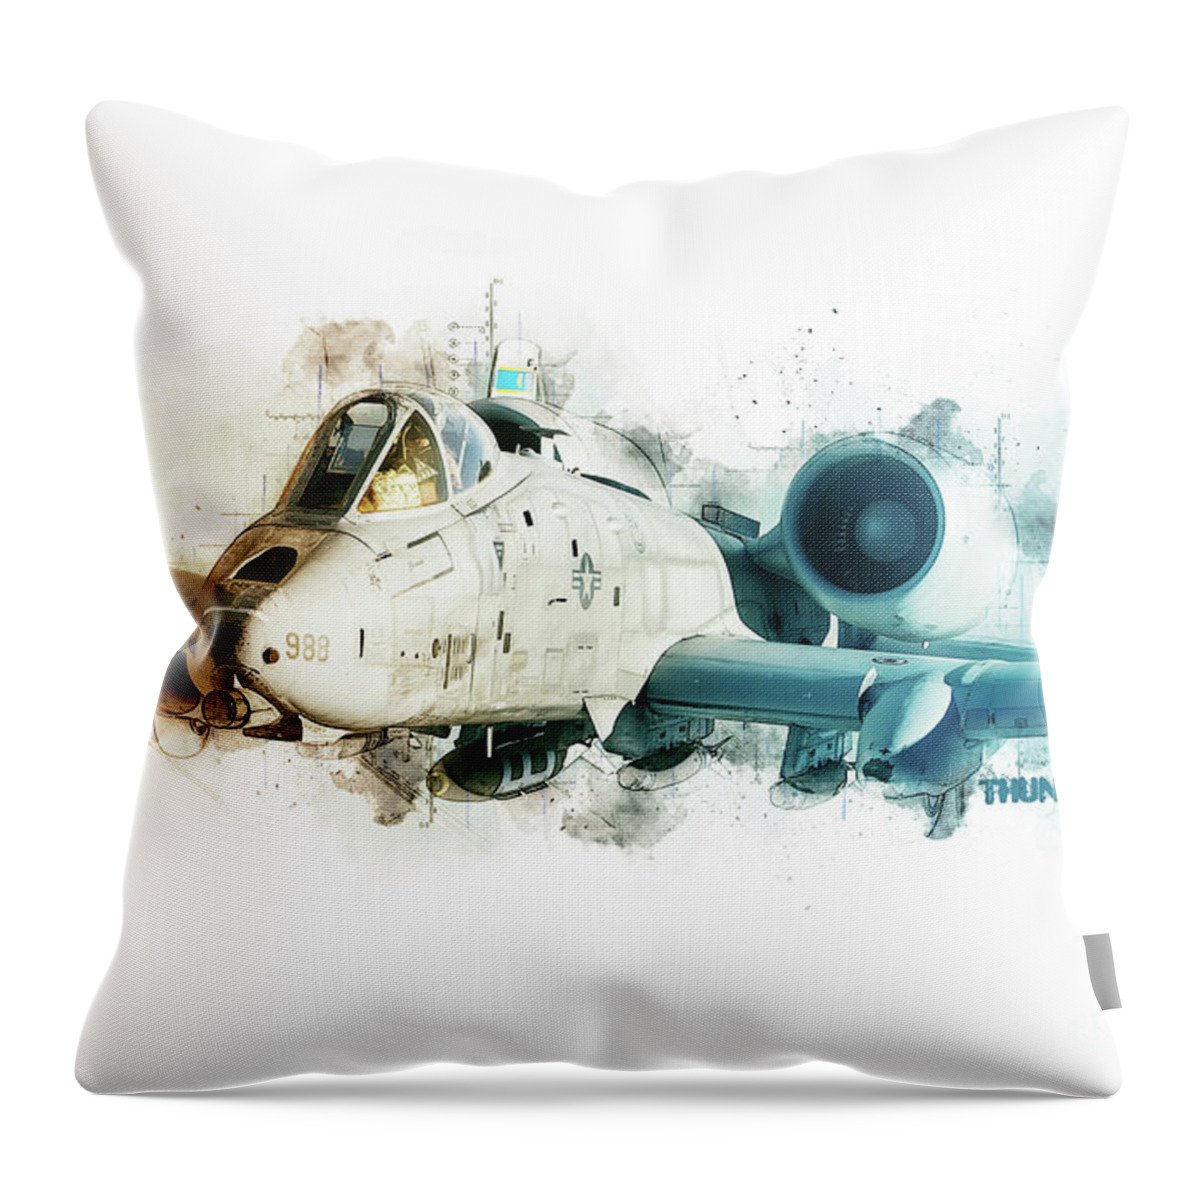 A-10 Throw Pillow featuring the digital art A-10 Thunderbolt Tech by Airpower Art